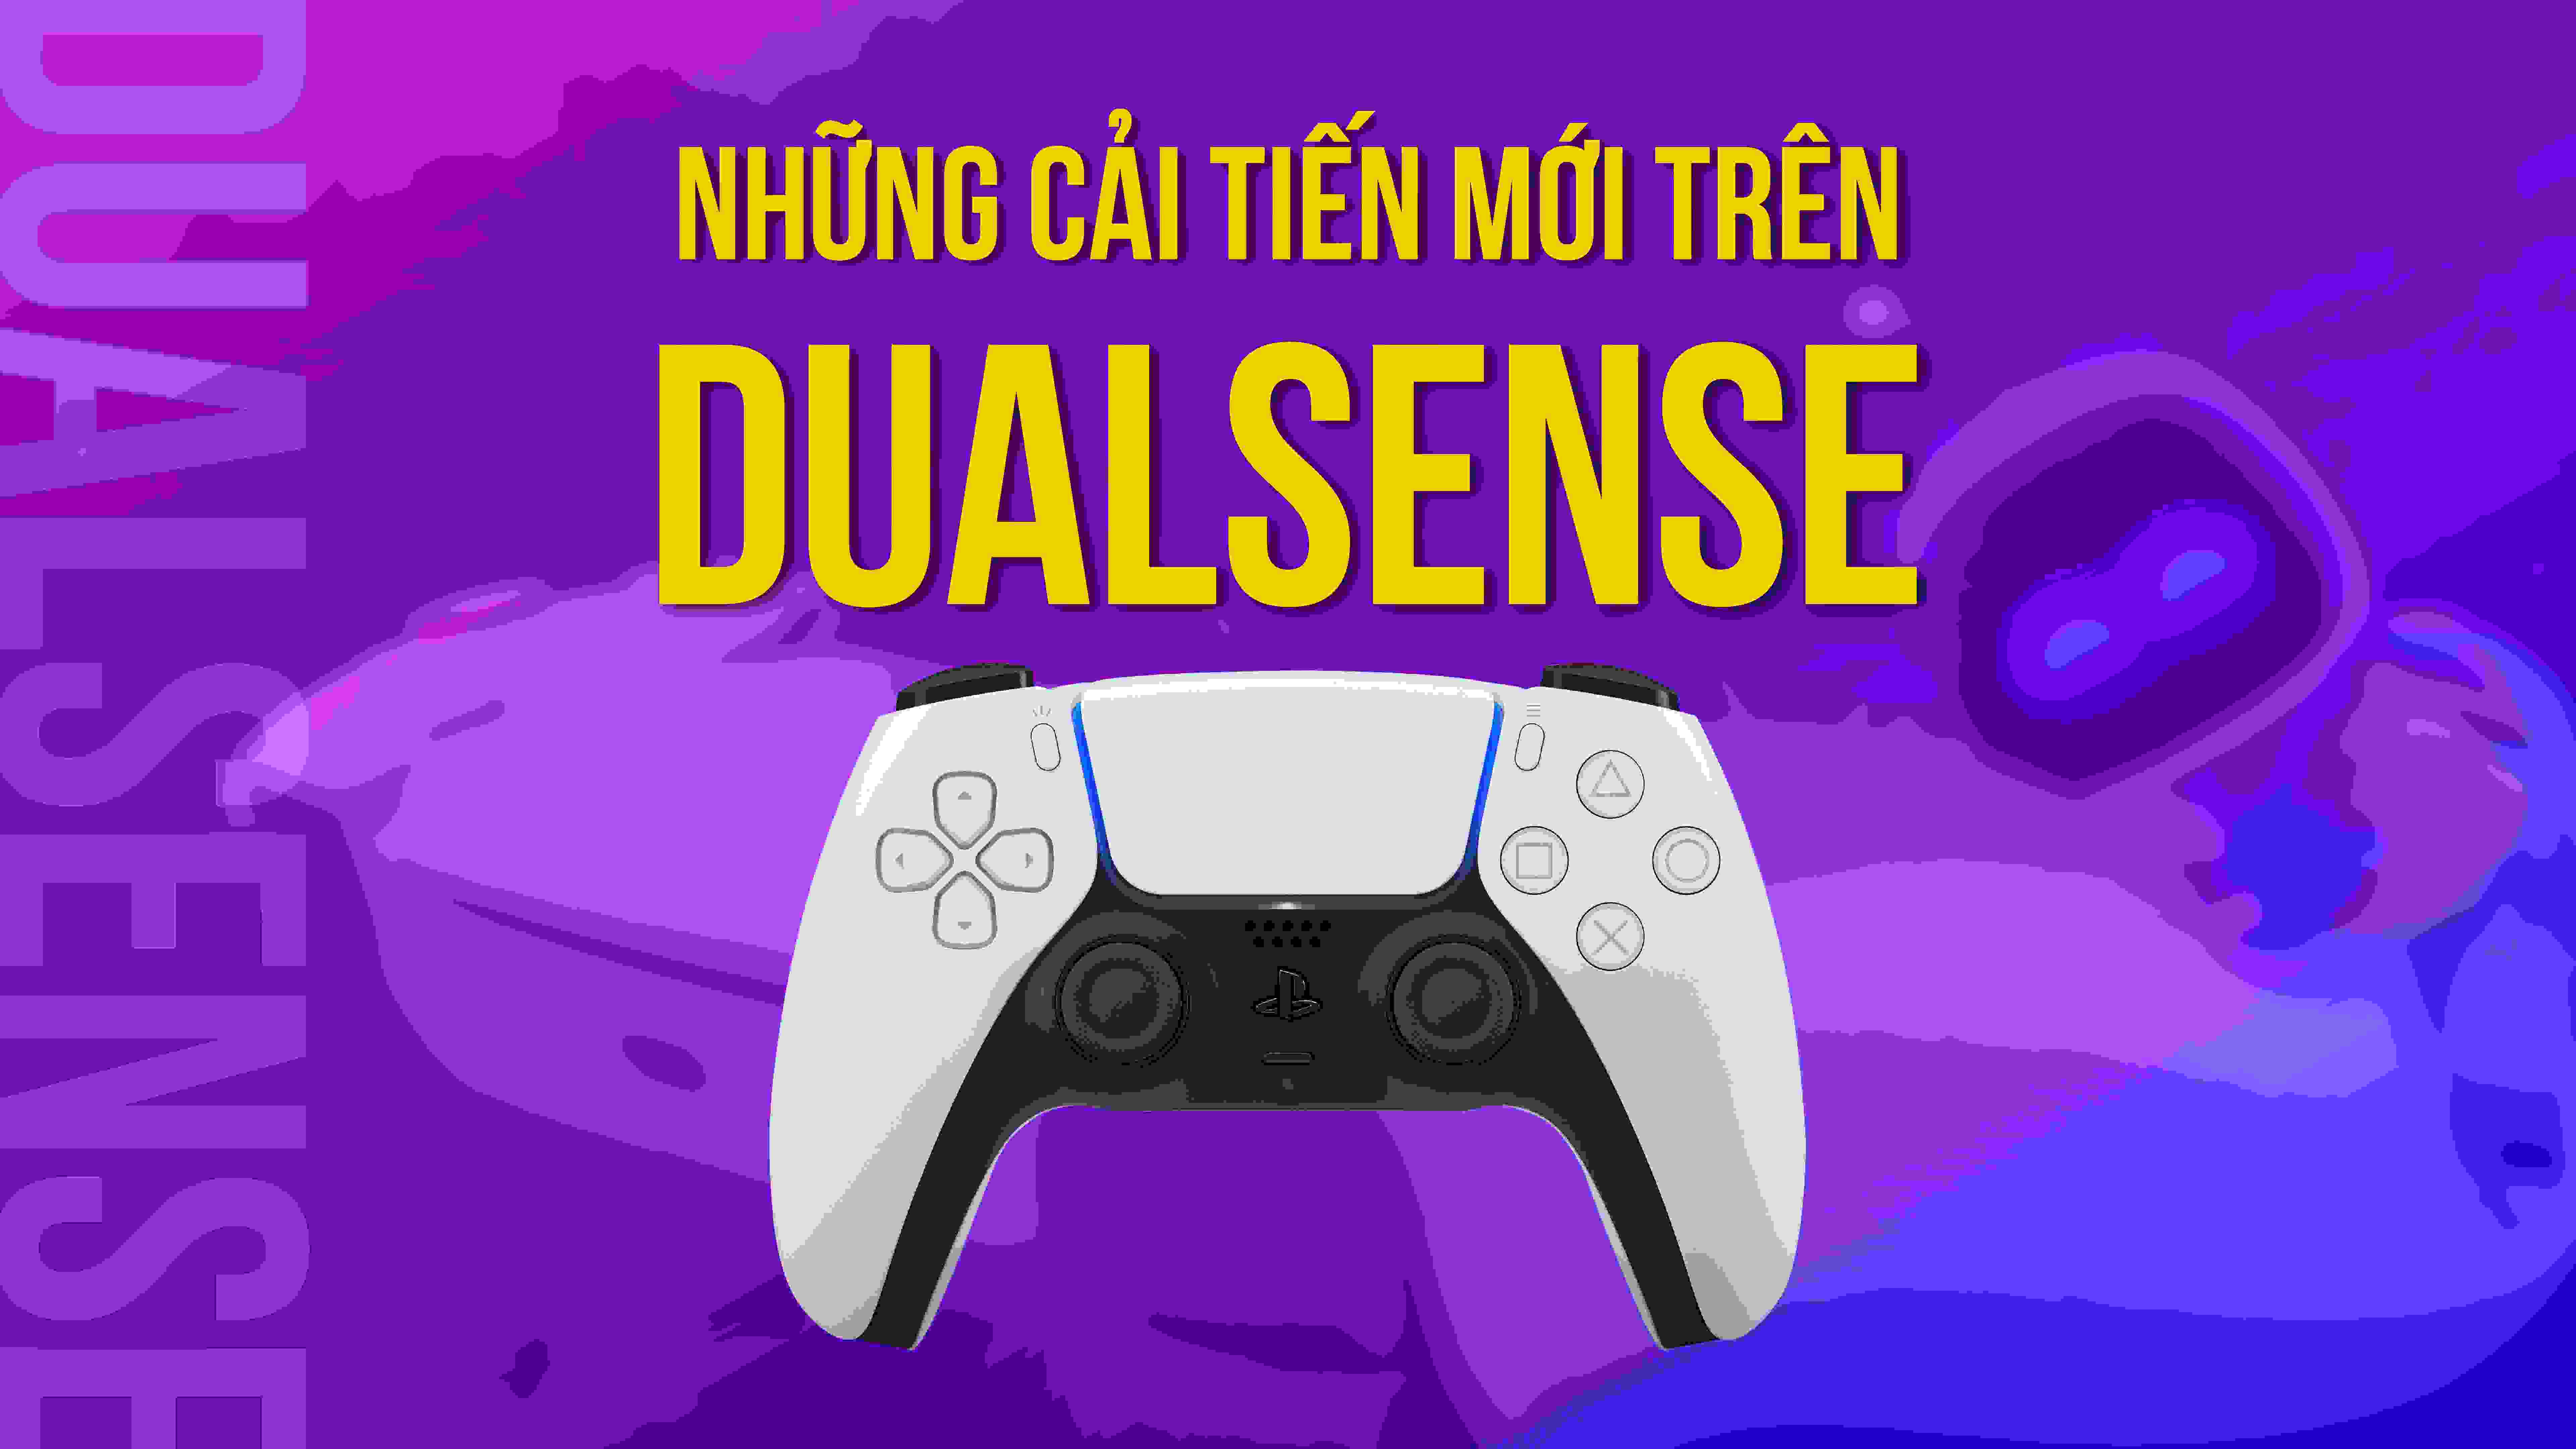 Tay cầm DualSense có đáng để mong chờ?